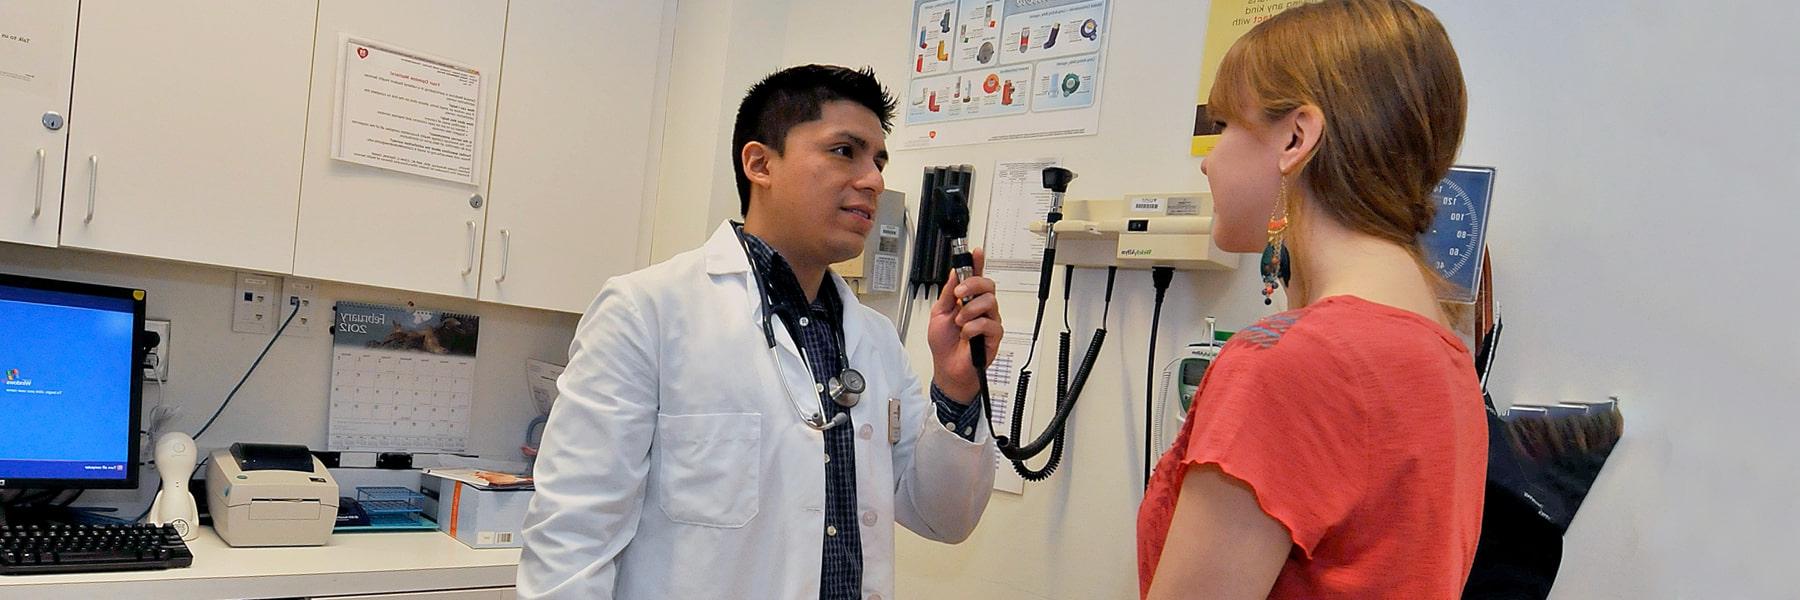 马塞诸斯州大学波士顿 staff member in white coat with stethoscope examines student sitting on a medical table